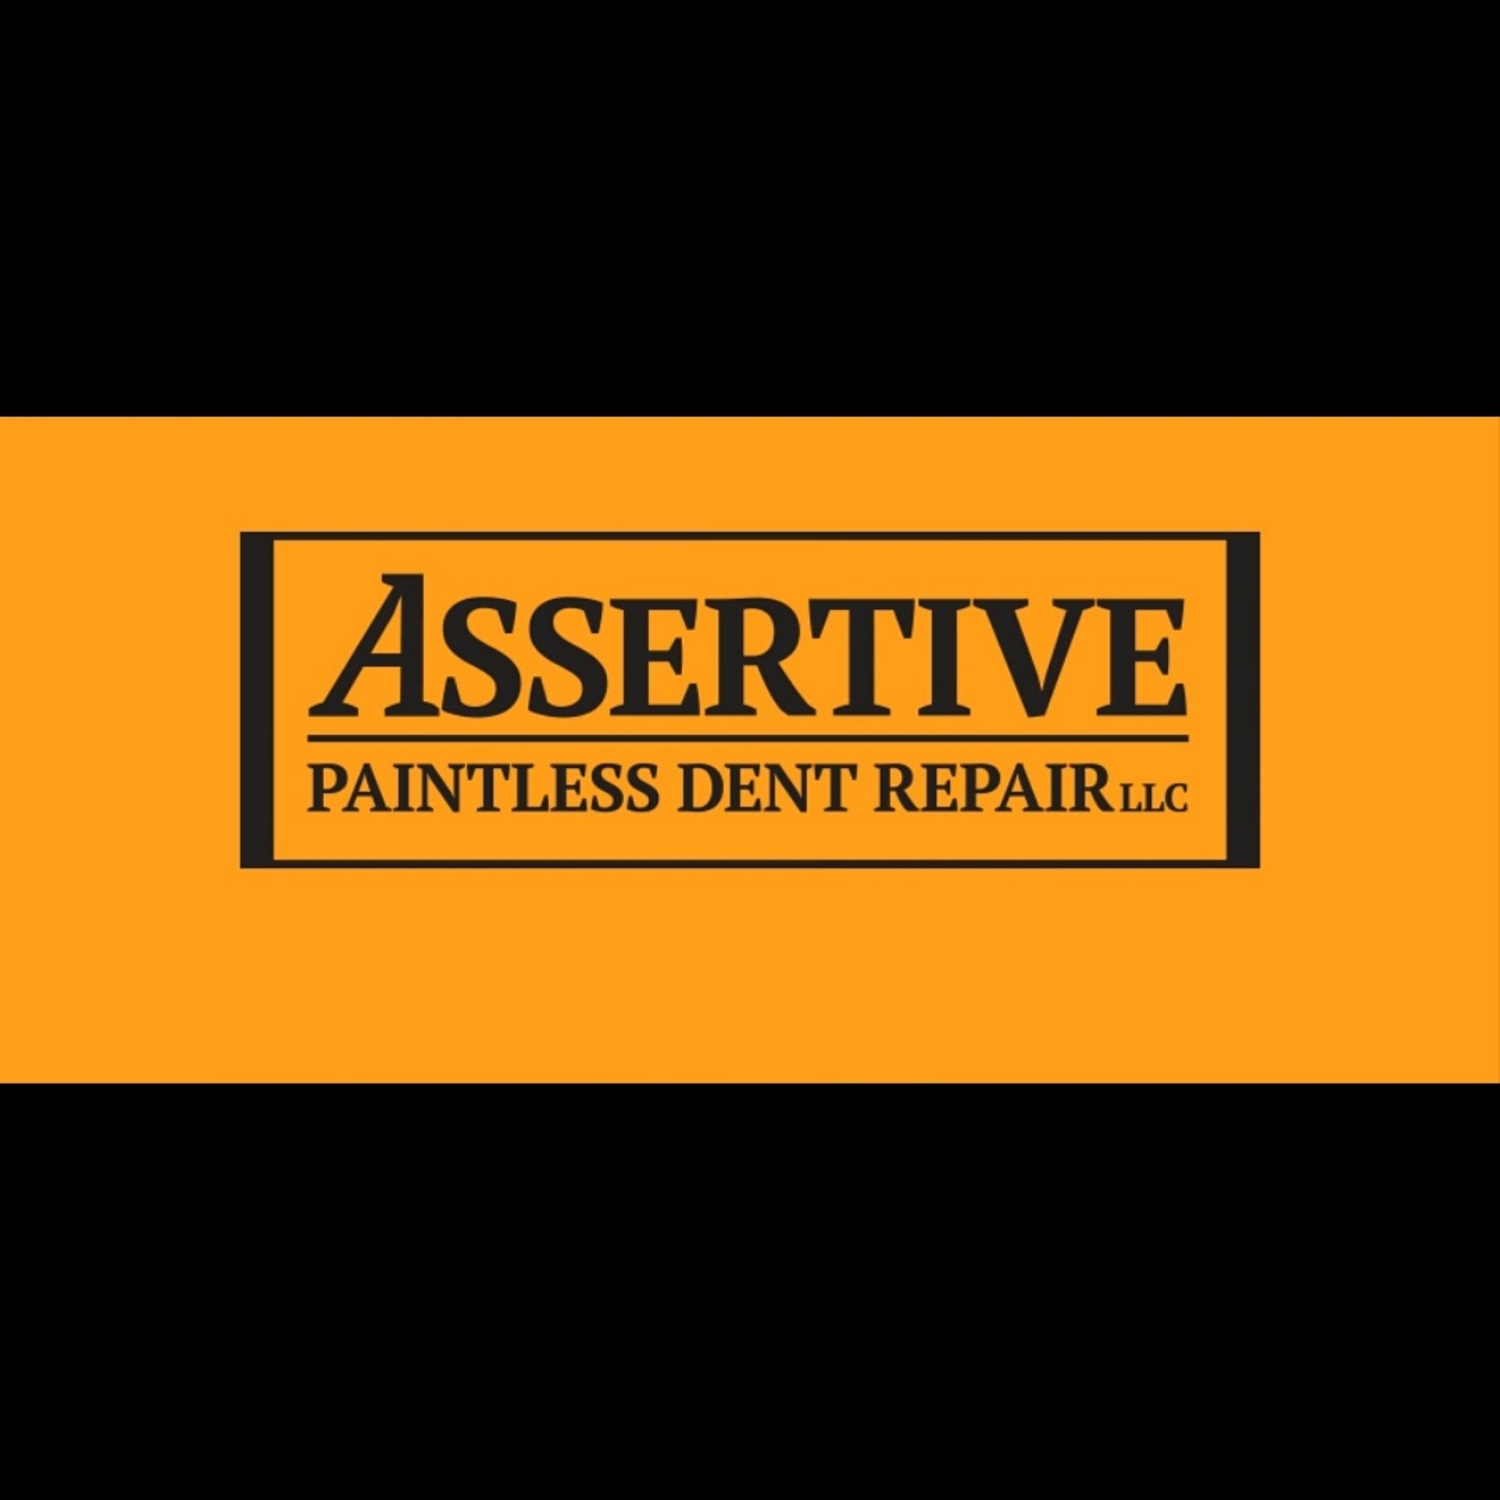 Assertive Paintless Dent Repair LLC